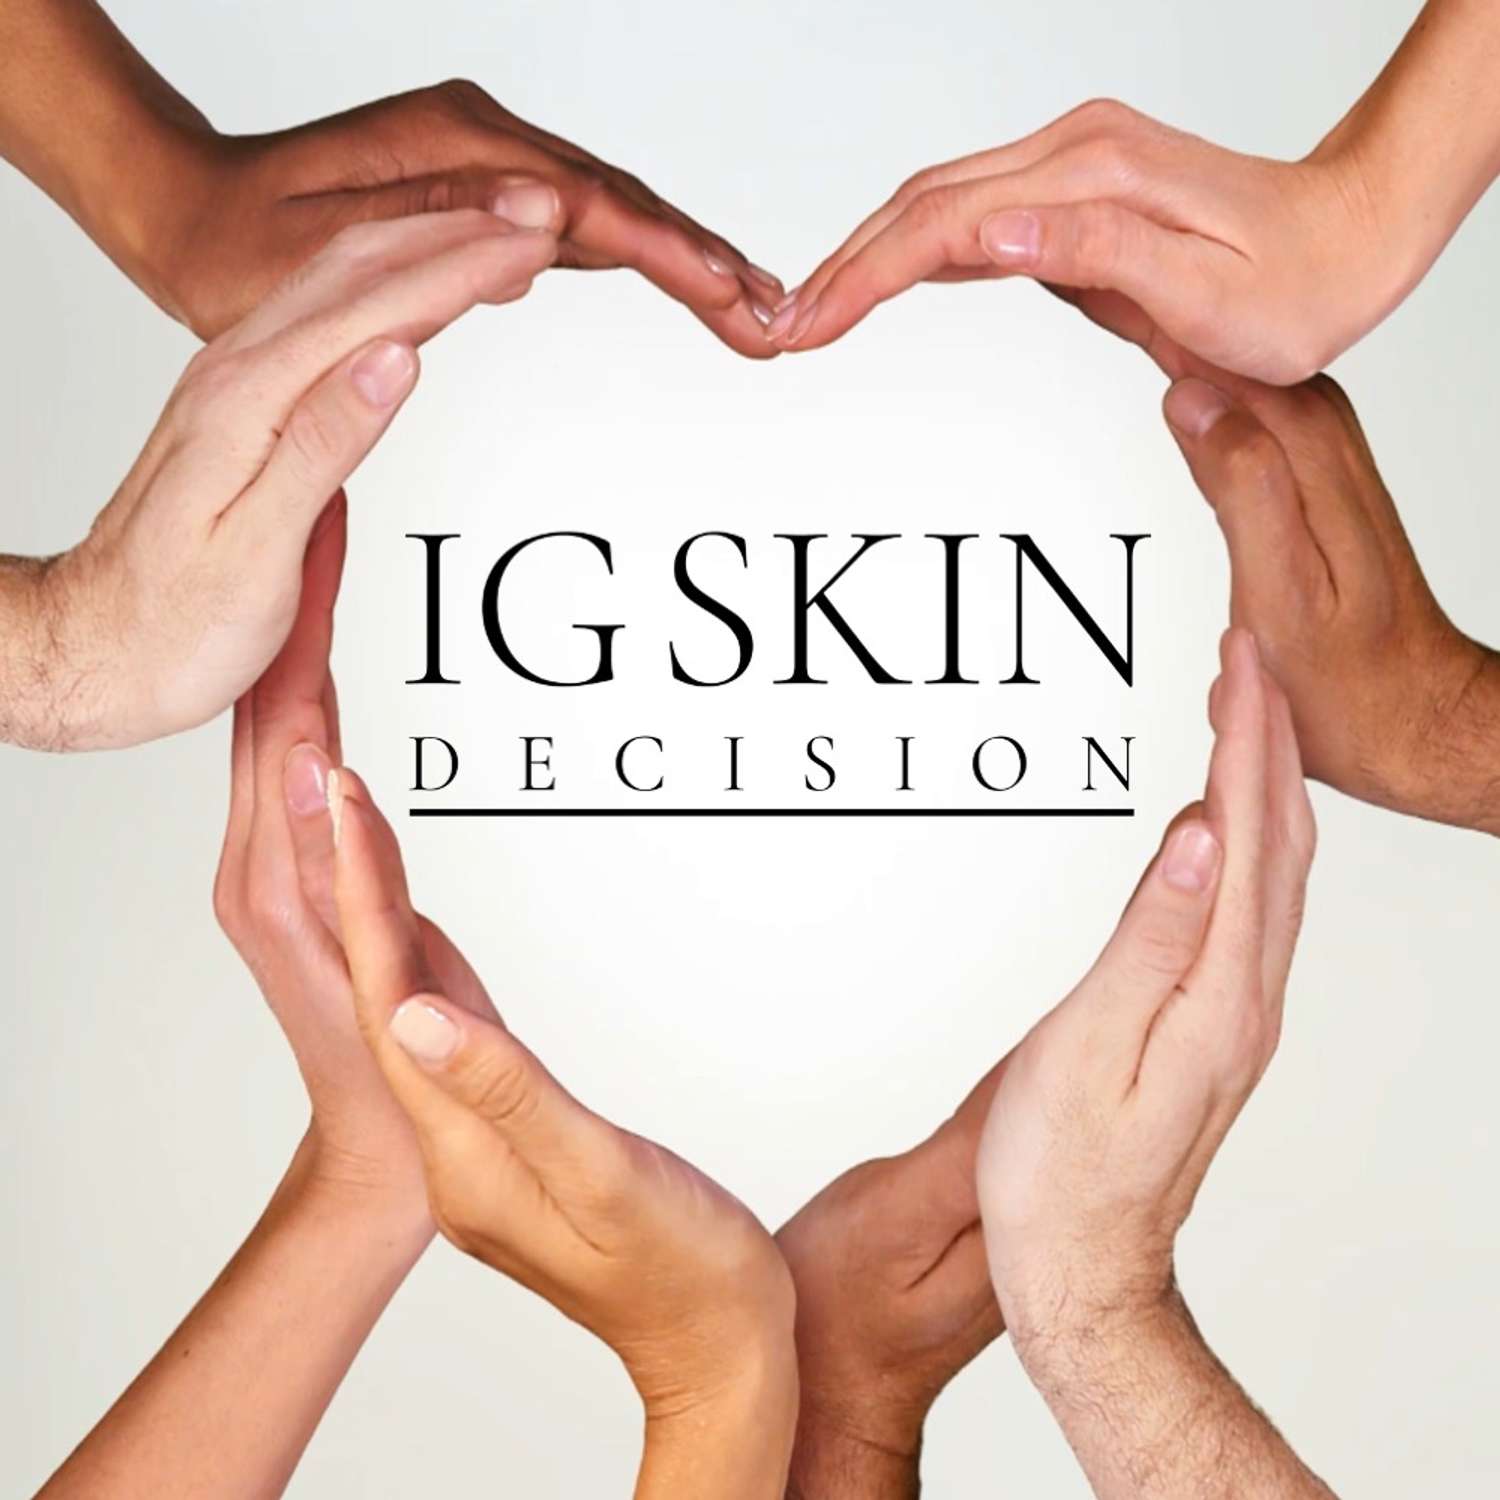 Сыворотка для лица от постакне IG SKIN Decision с транексамовой кислотой 2% пребиотиками и фруктовыми кислотами - фото 10